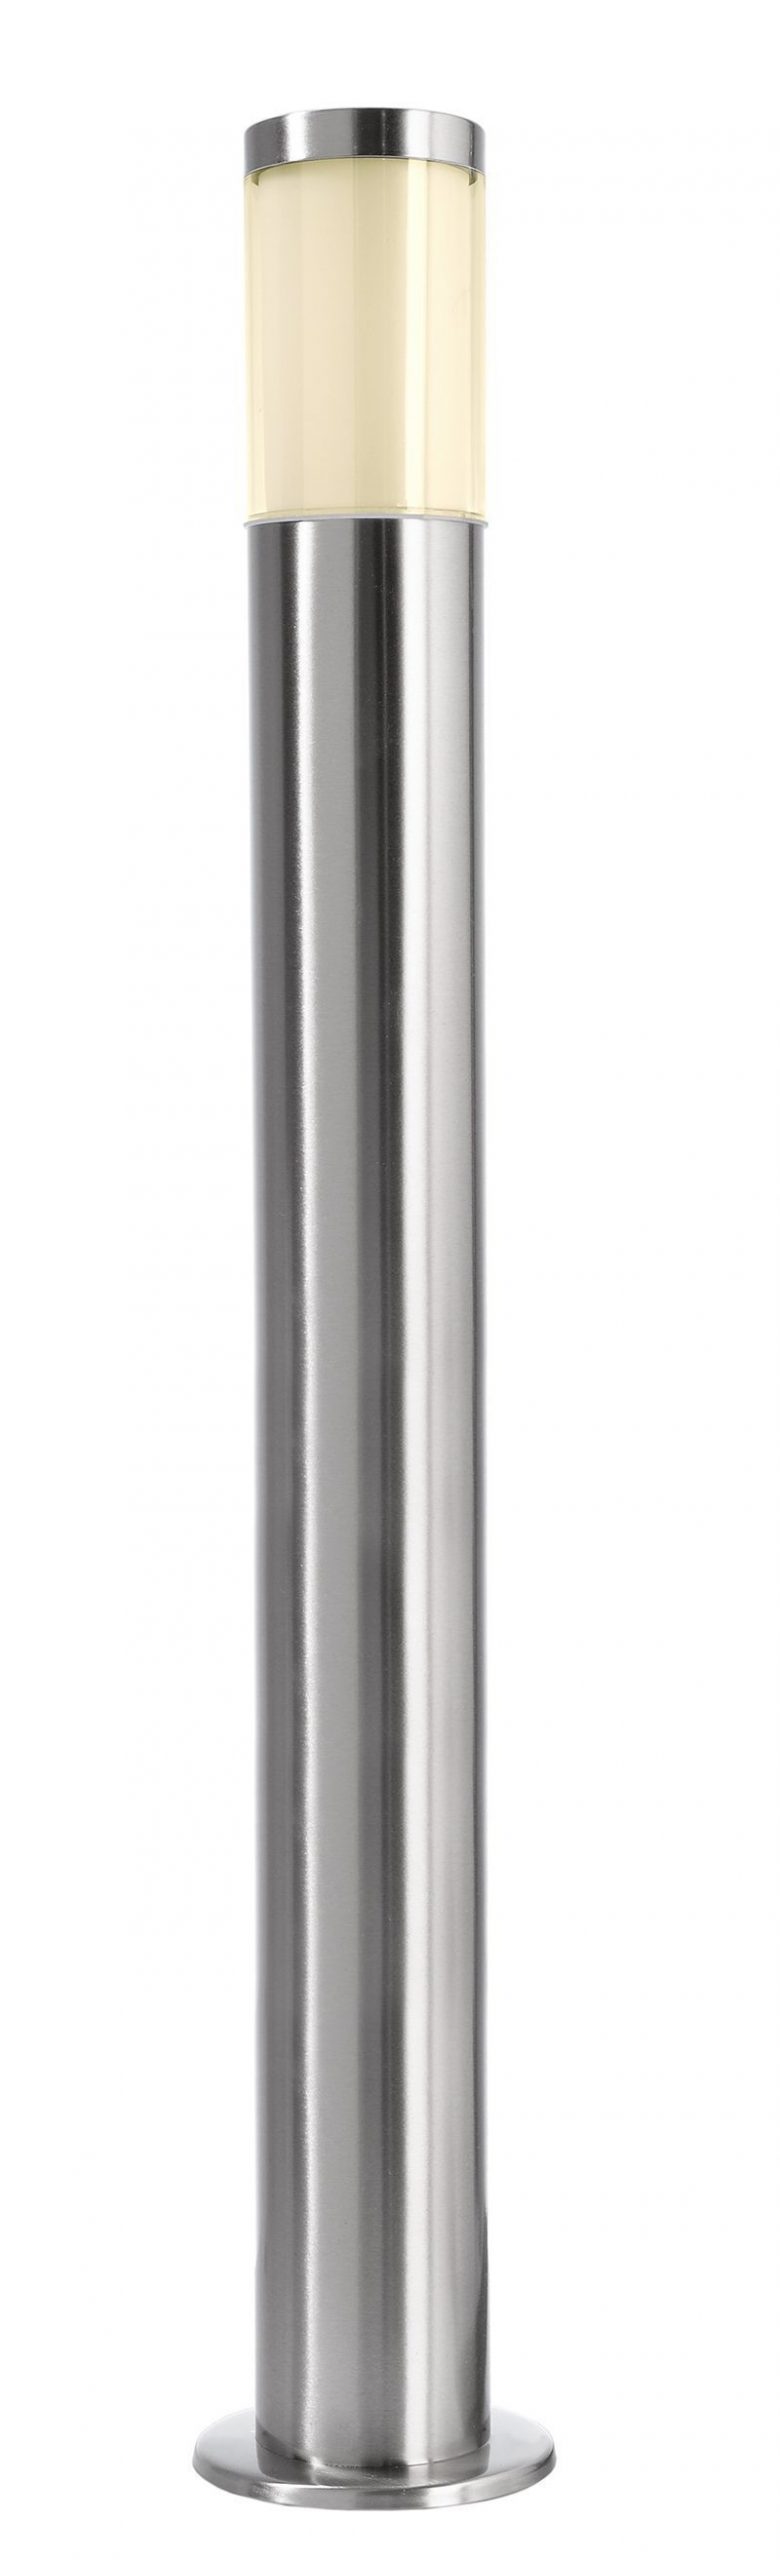 Zoompi staande buitenlamp Gu10 - RVS - Zilver - 1m hoog - Zoomoi